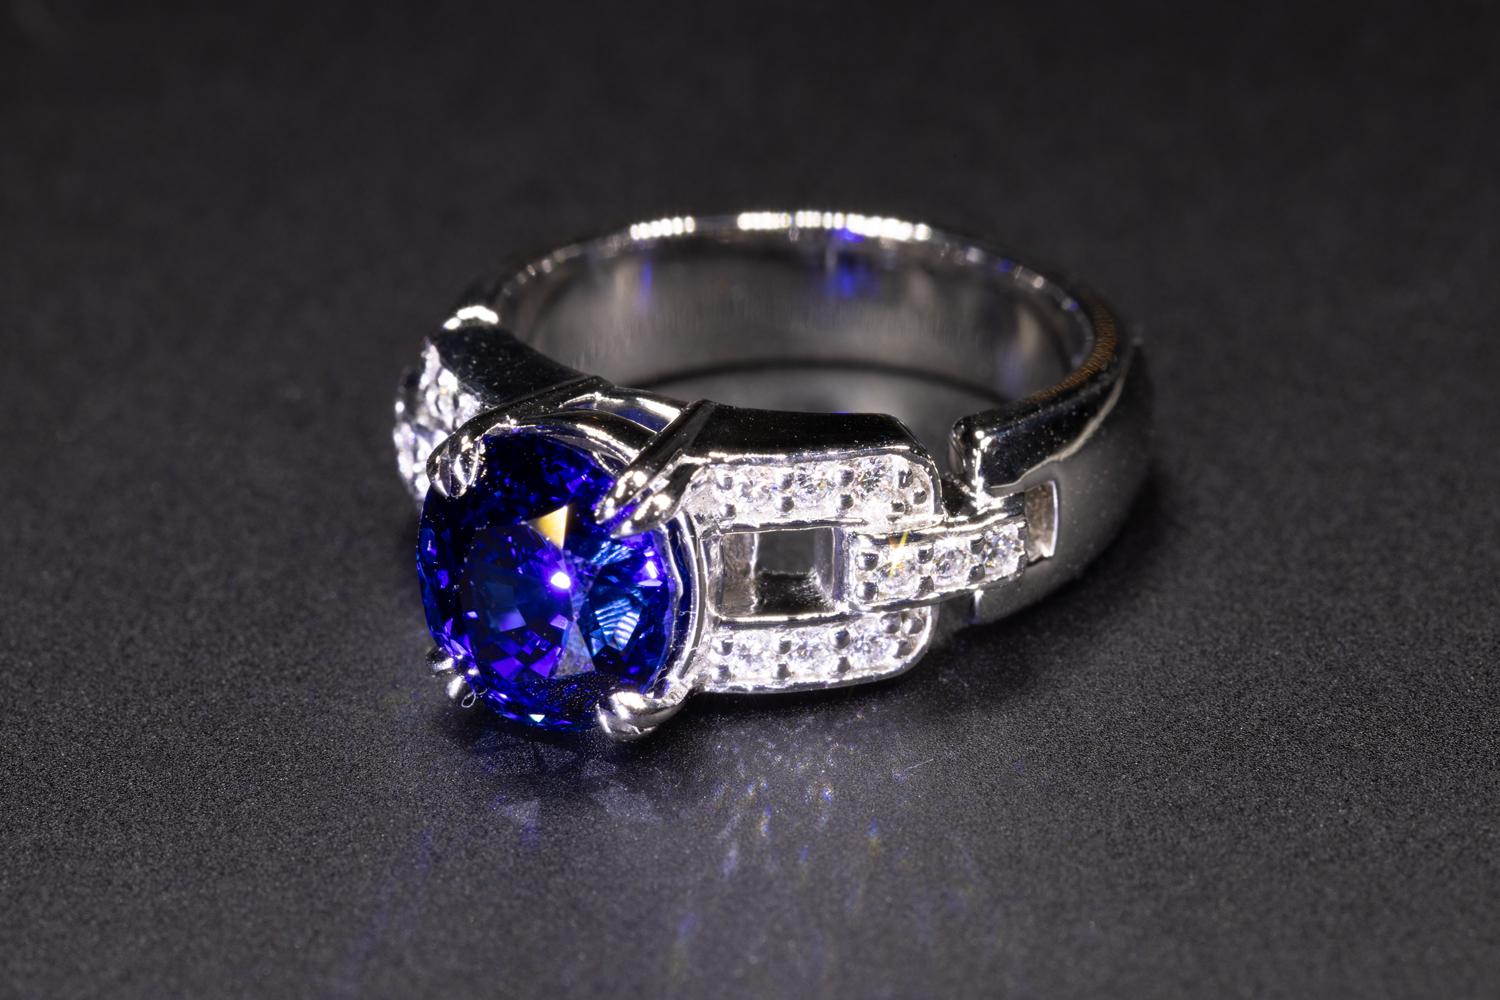 Il s'agit d'une magnifique bague en saphir bleu de Ceylan naturel non traité de 4.032 serti dans une monture en platine faite sur mesure. Le saphir est rehaussé de diamants et est serti dans une monture classique en platine. Il s'agit d'un bijou